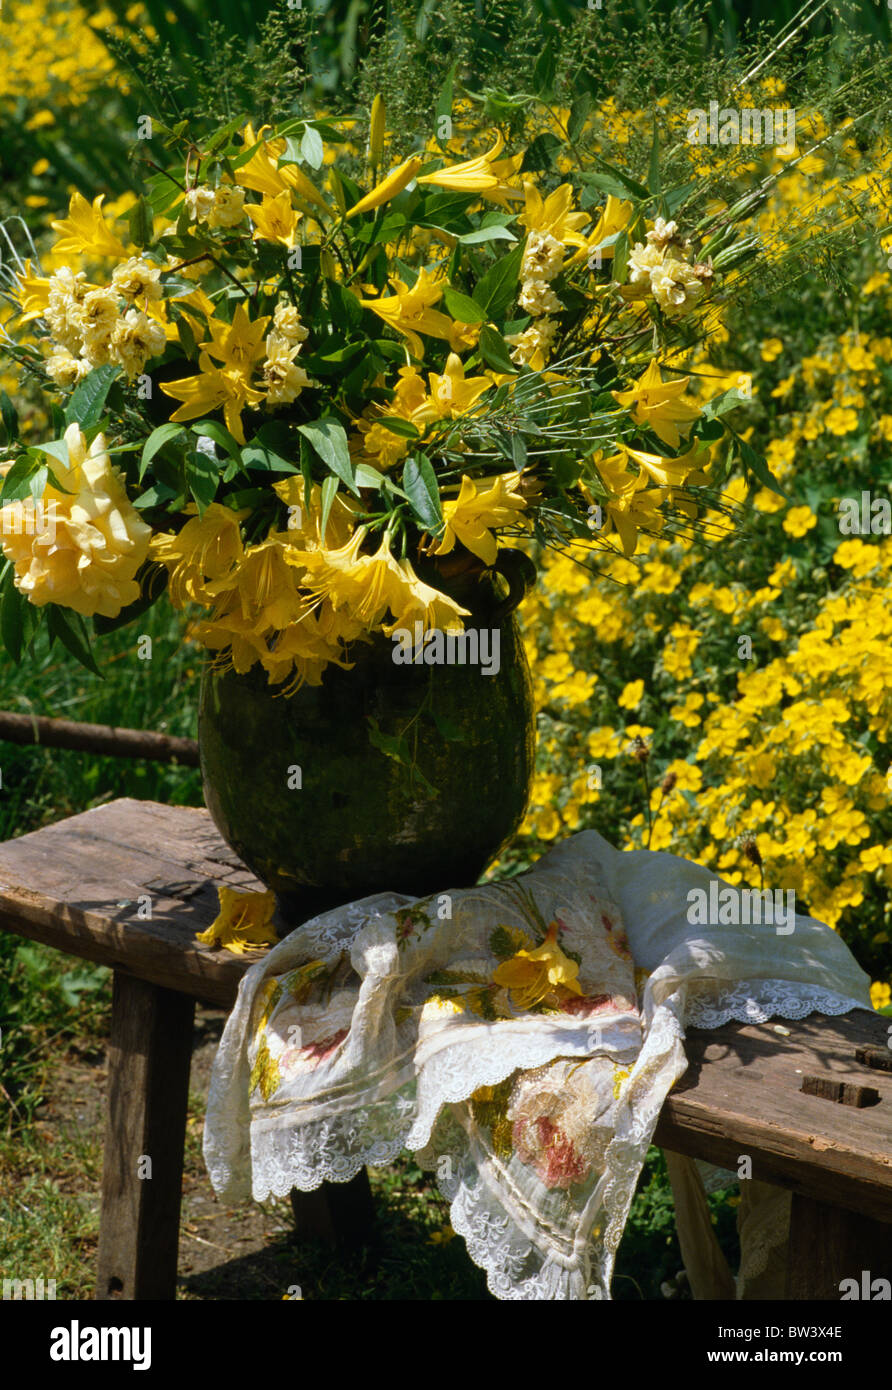 Stillleben von gelben Freesien und Lilien in Vase auf Gartenbank gegen gelb blühender Strauch Stockfoto